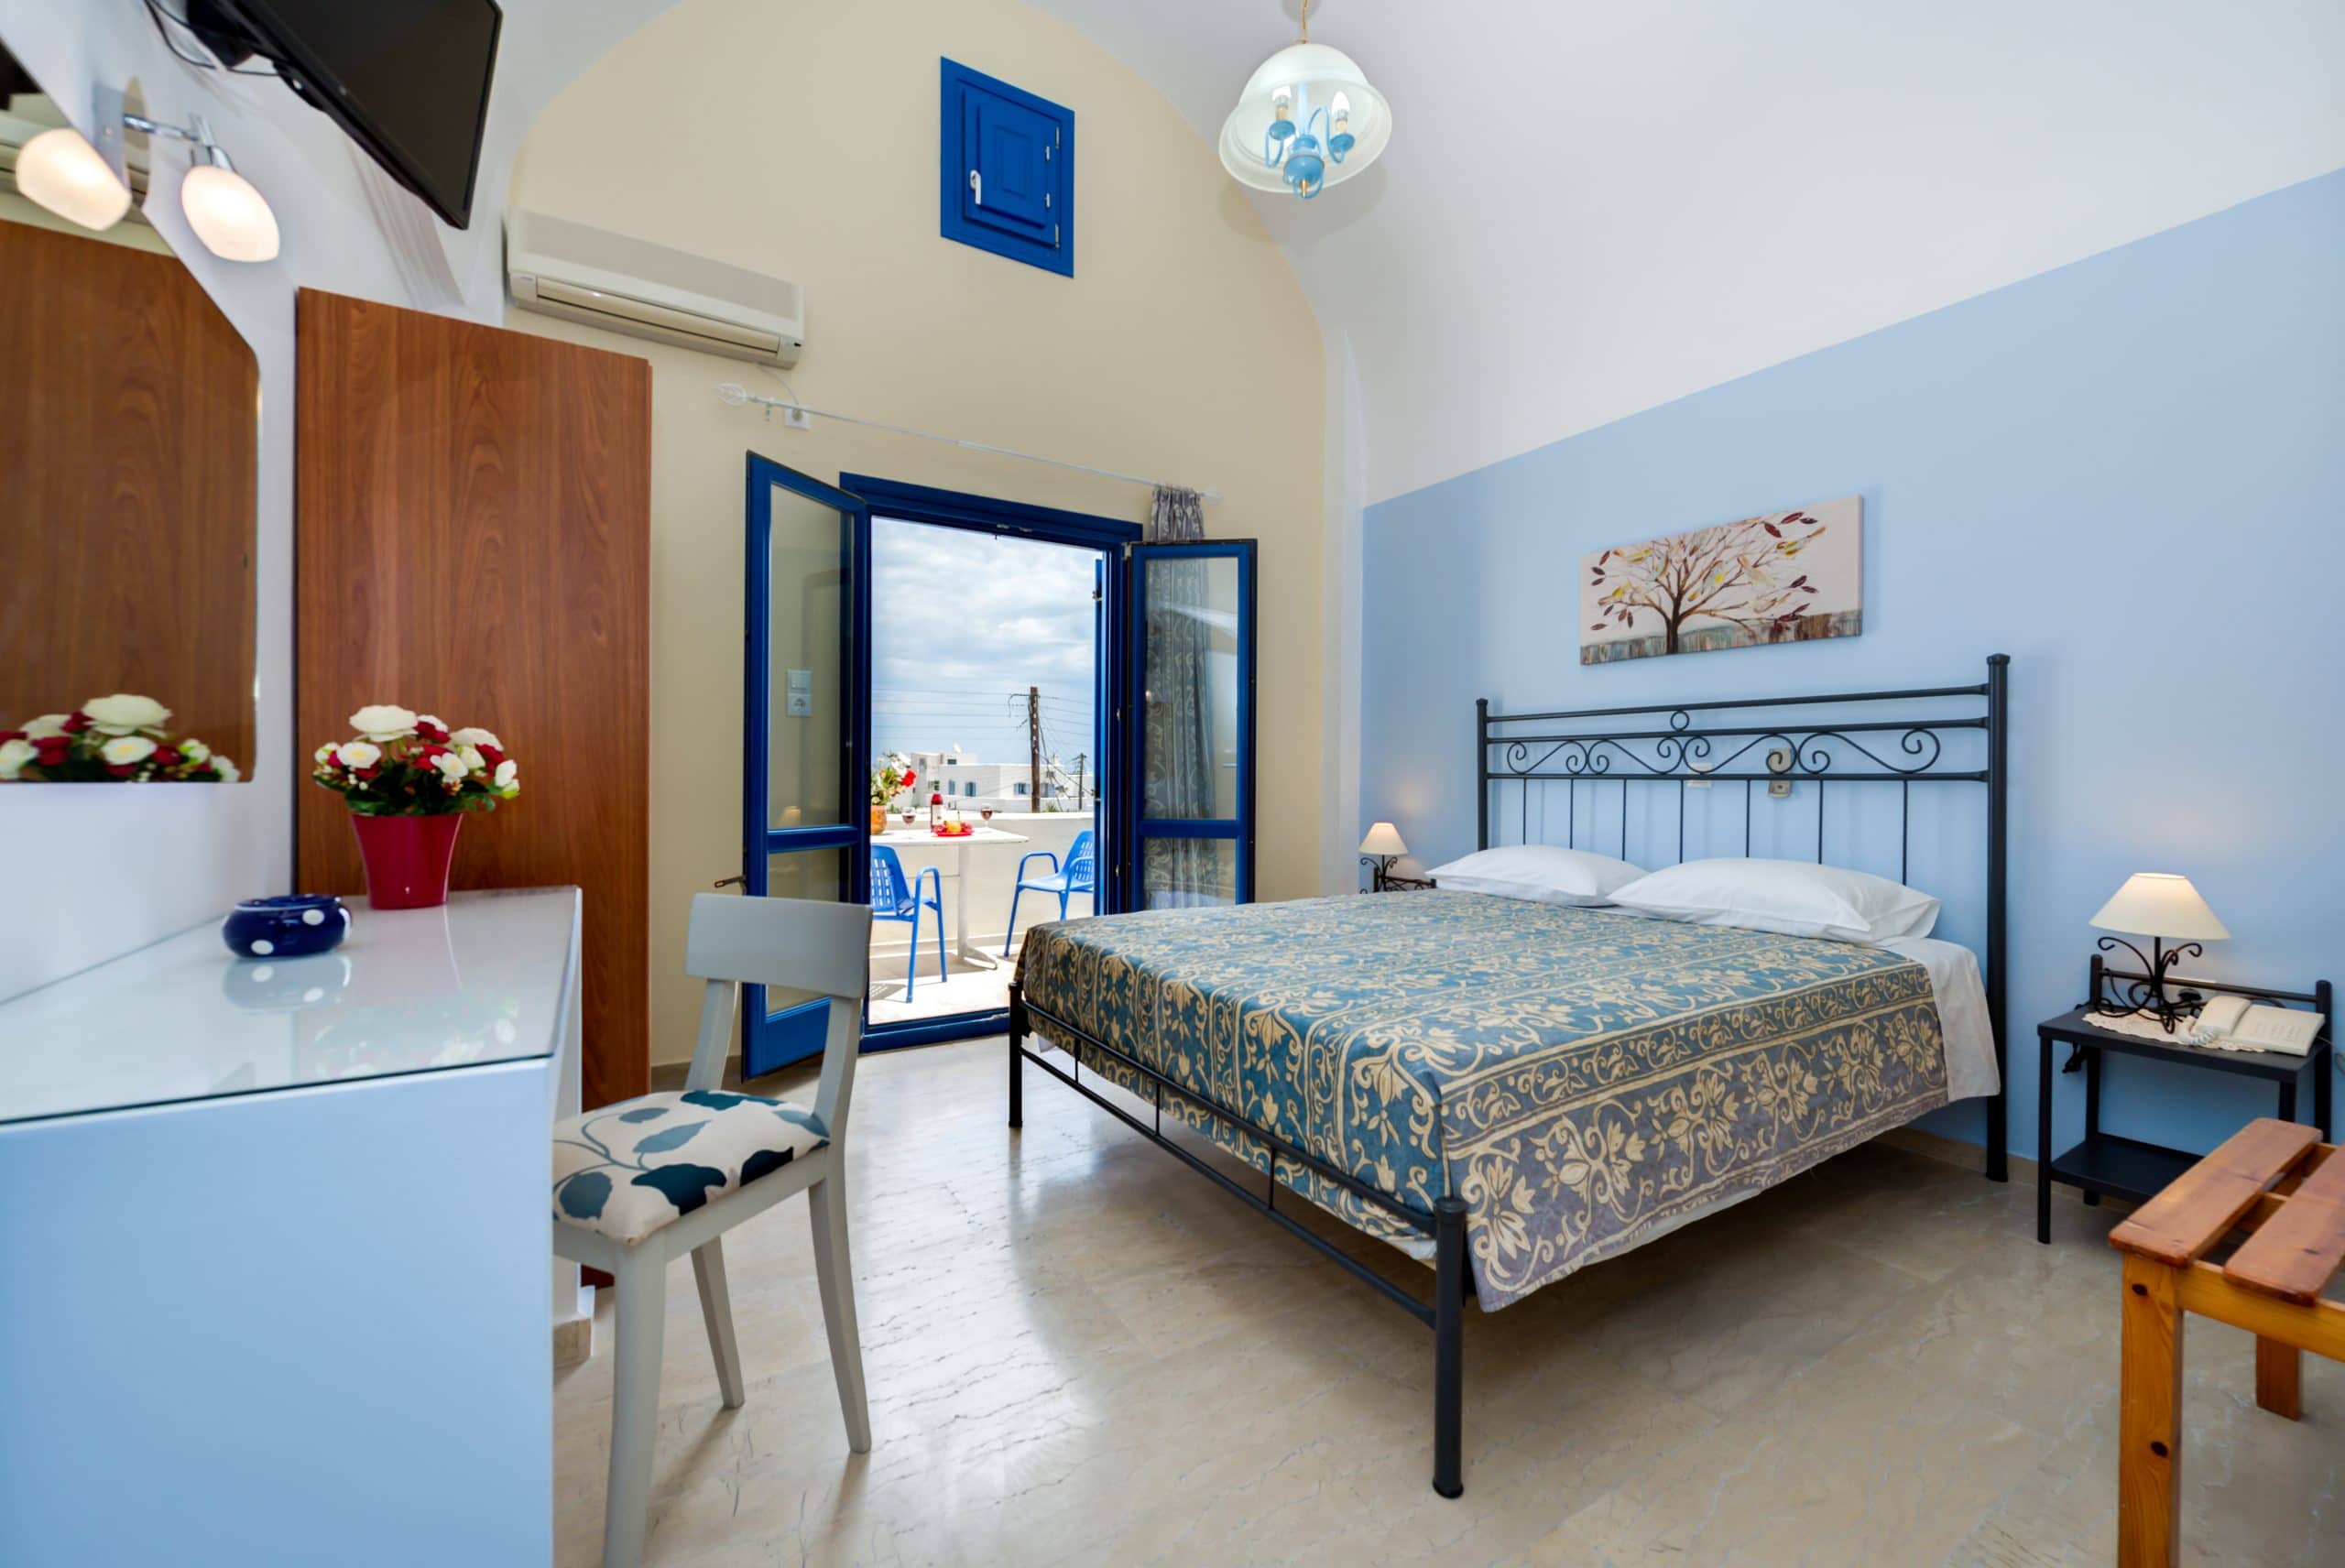 Hotel in Santorini